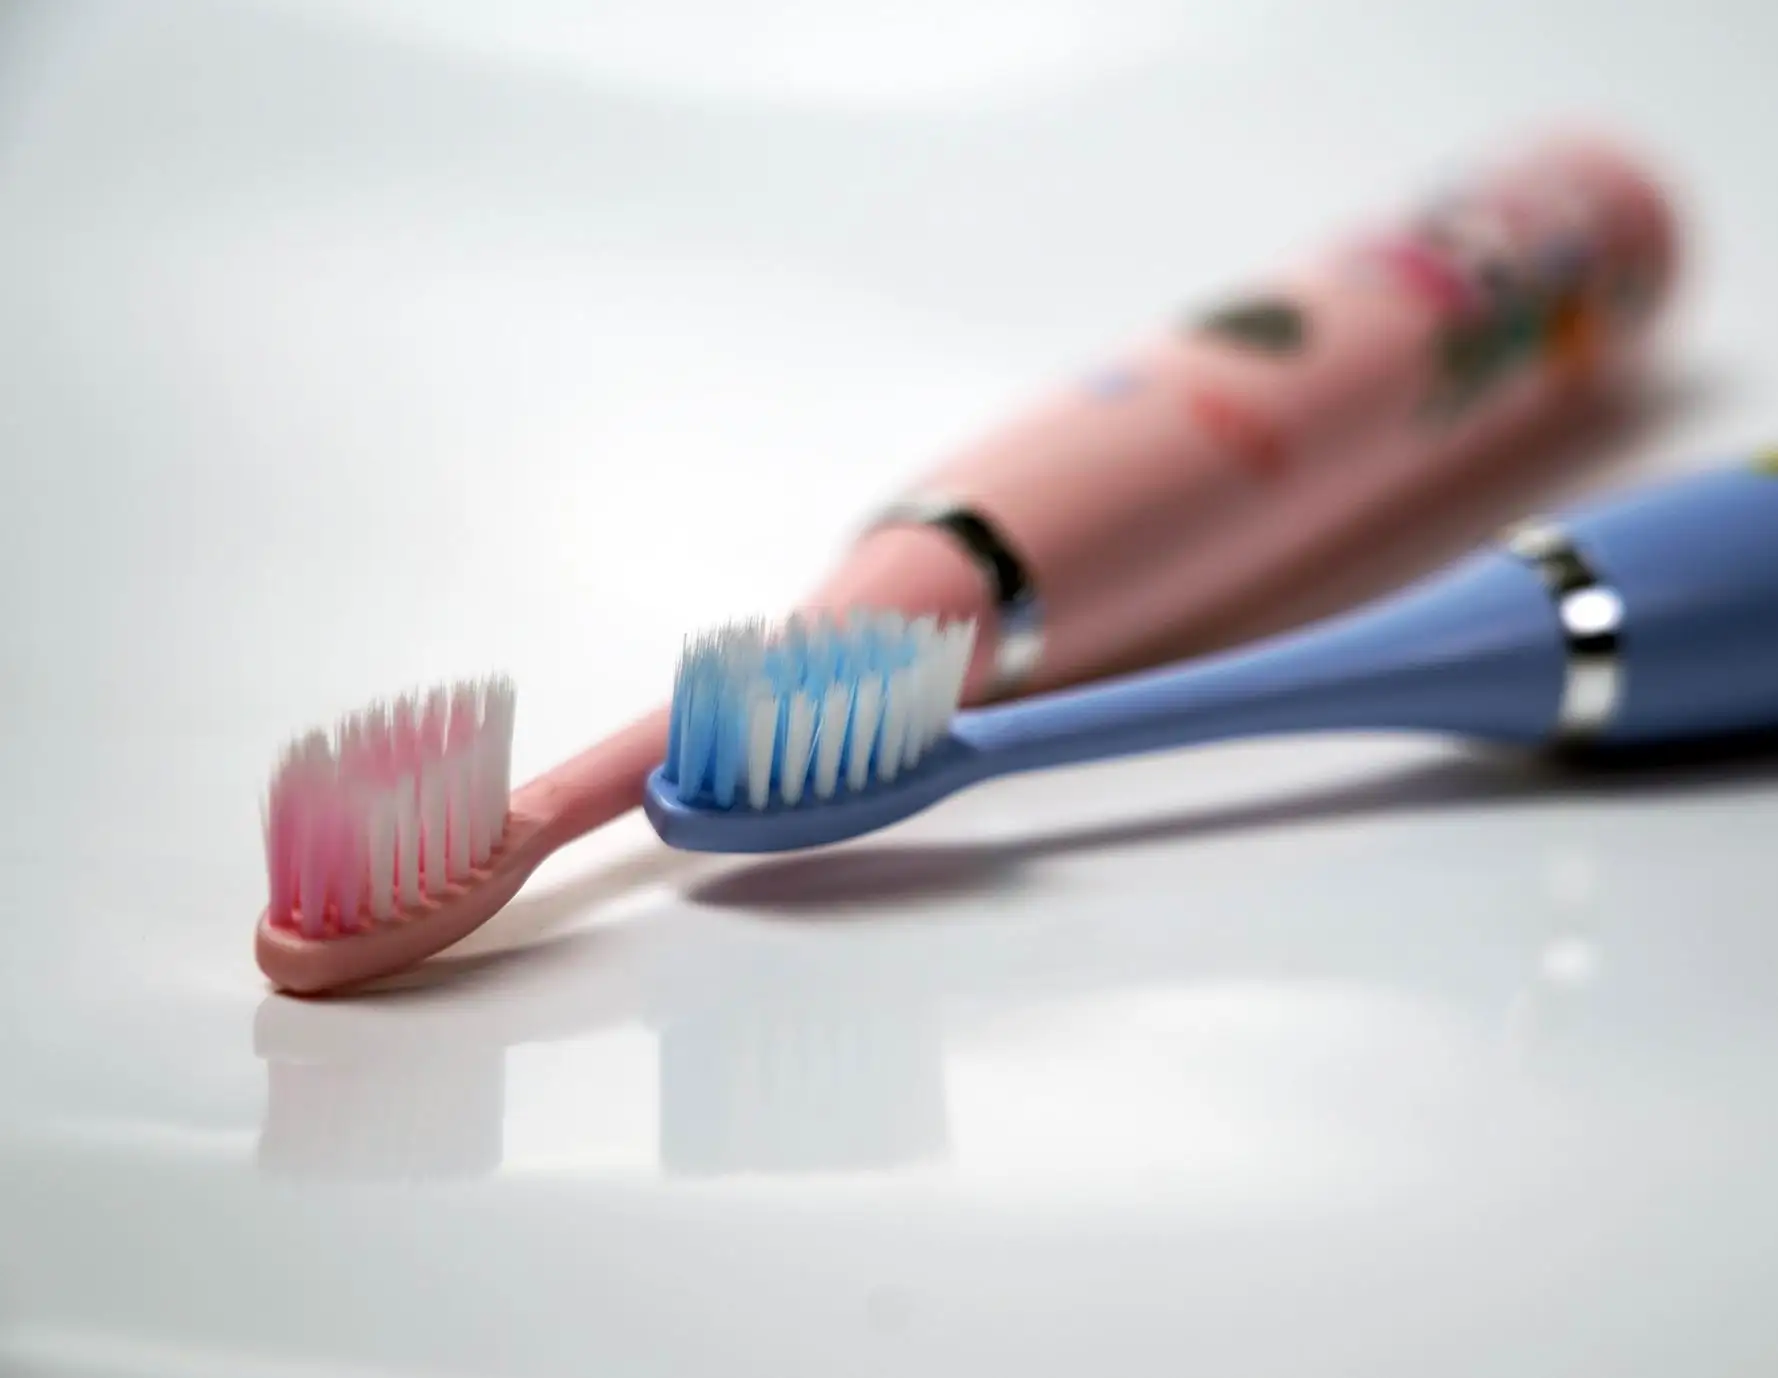 OEM privado automático blanqueamiento de dientes eléctrico inteligente cepillo de dientes impermeable cepillo de dientes electrónico cepillo de dientes eléctrico